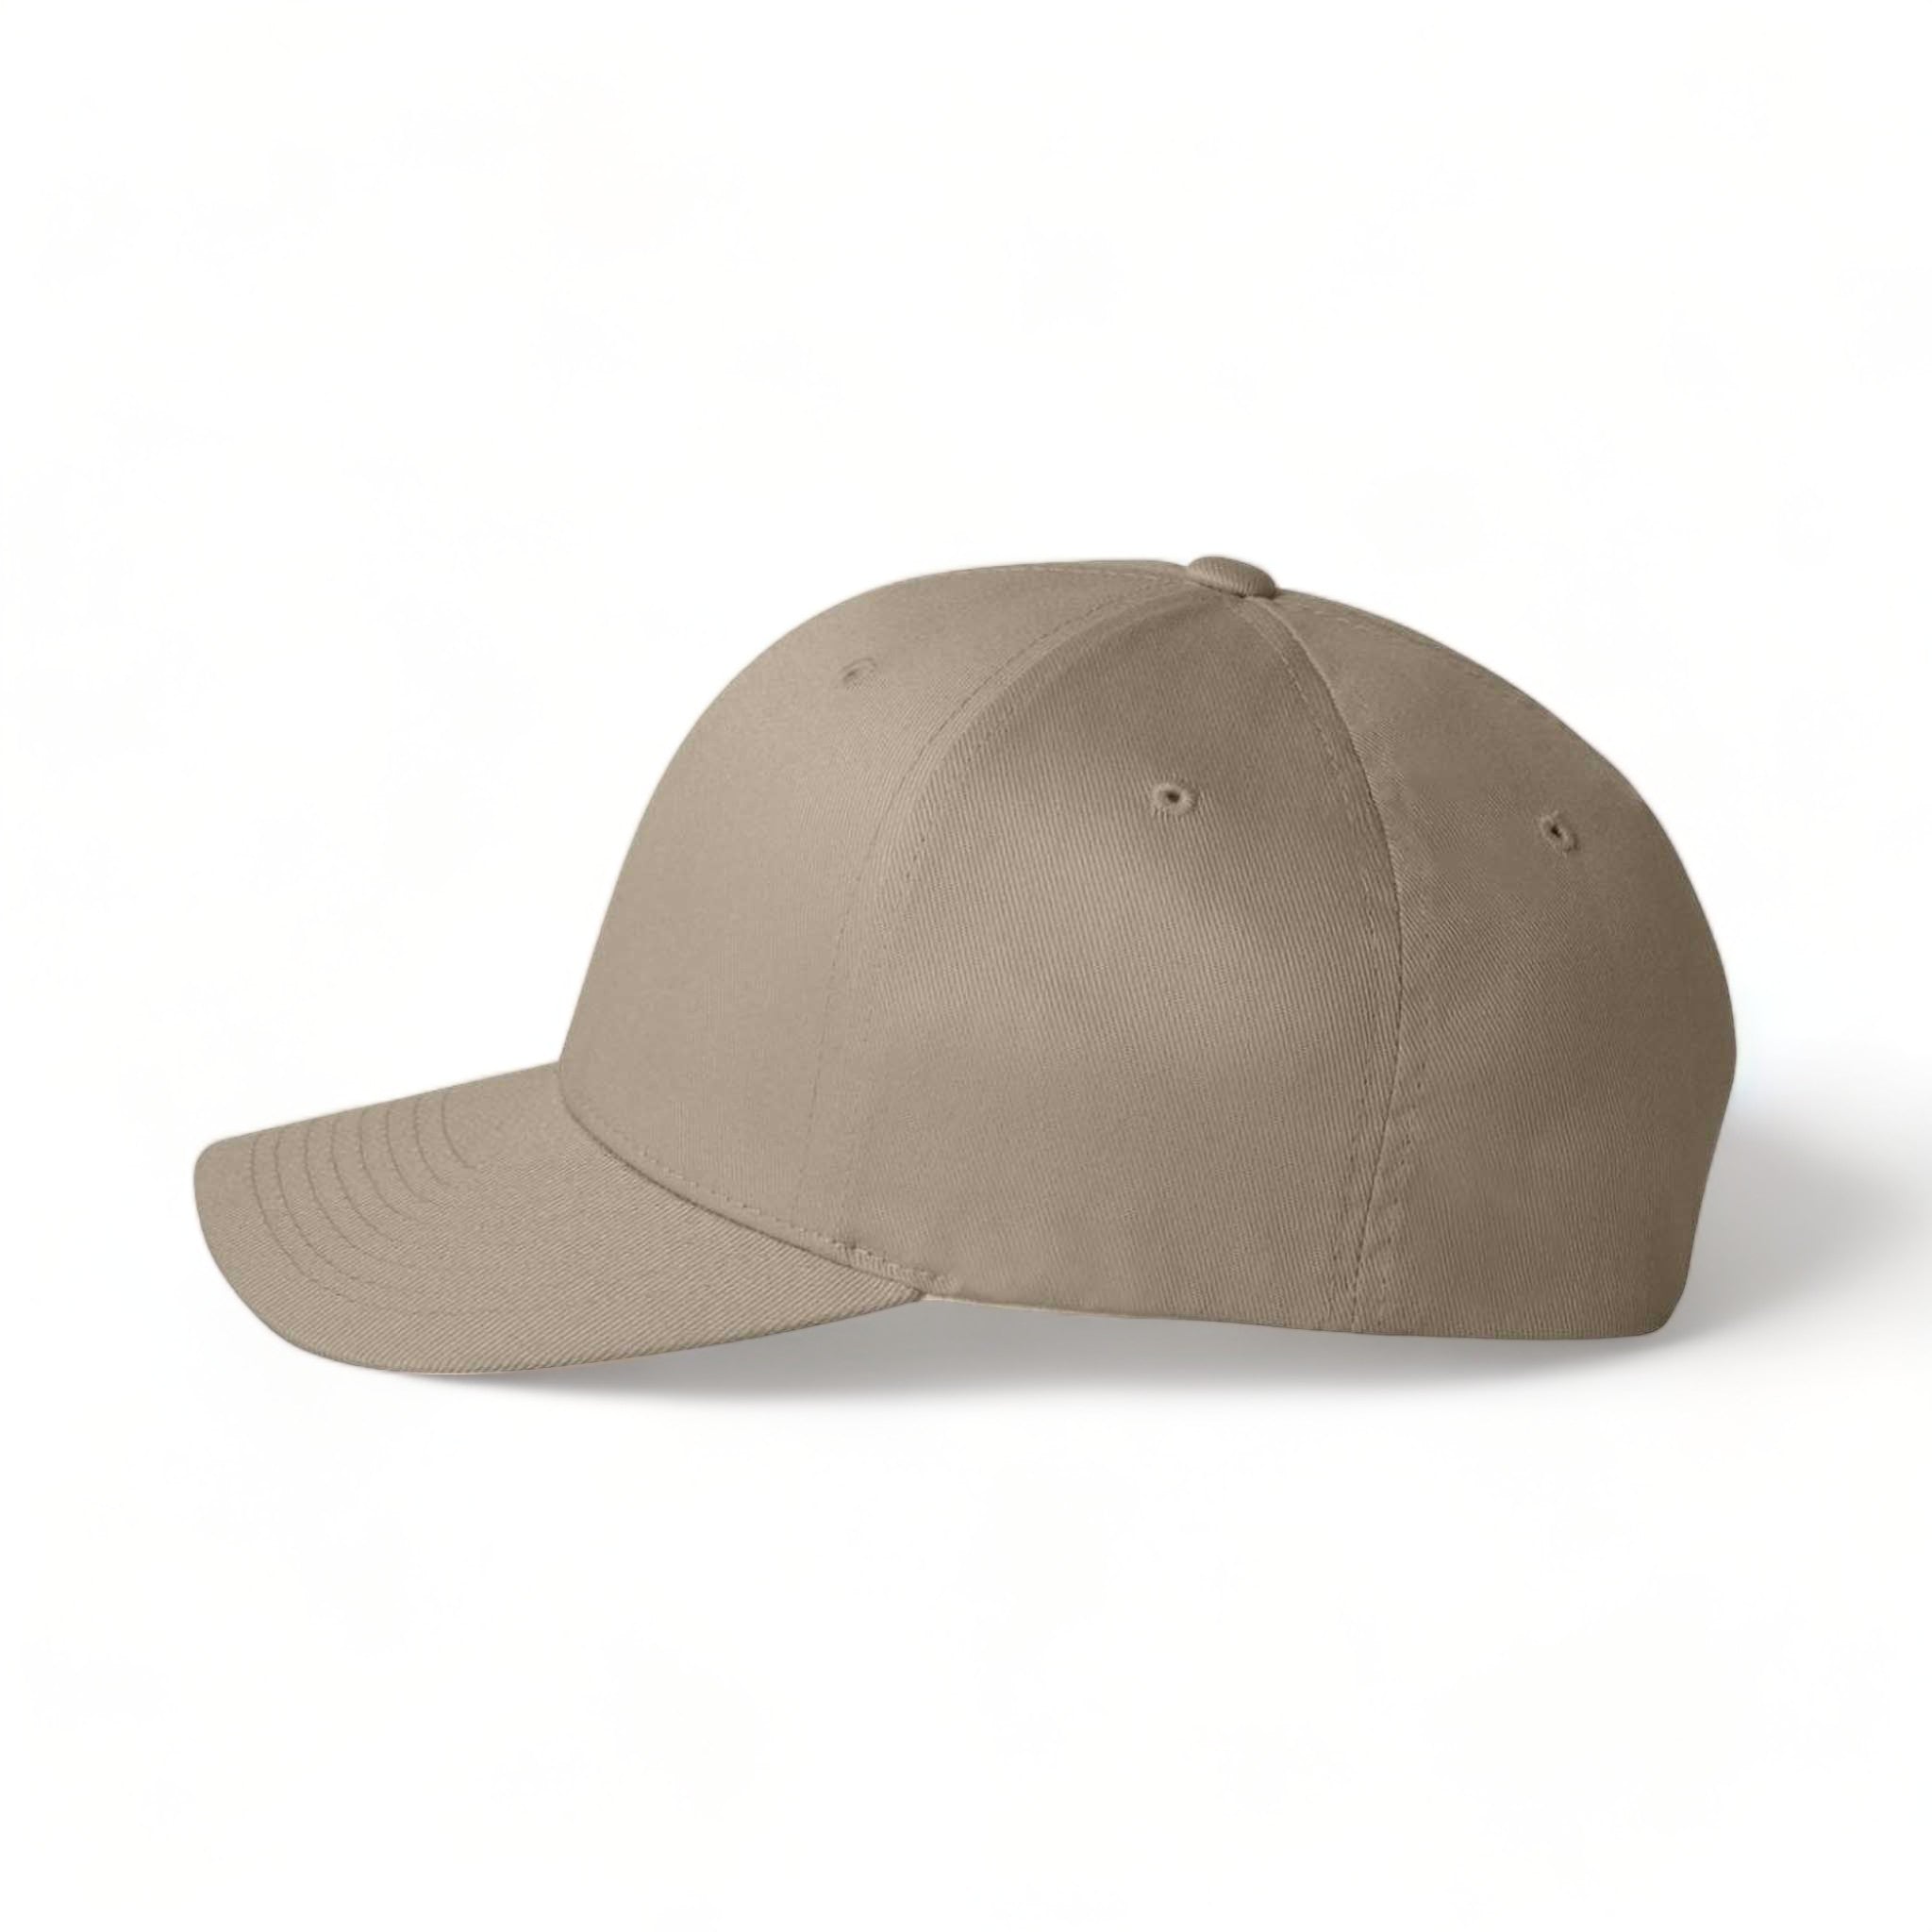 Side view of Flexfit 6277 custom hat in khaki